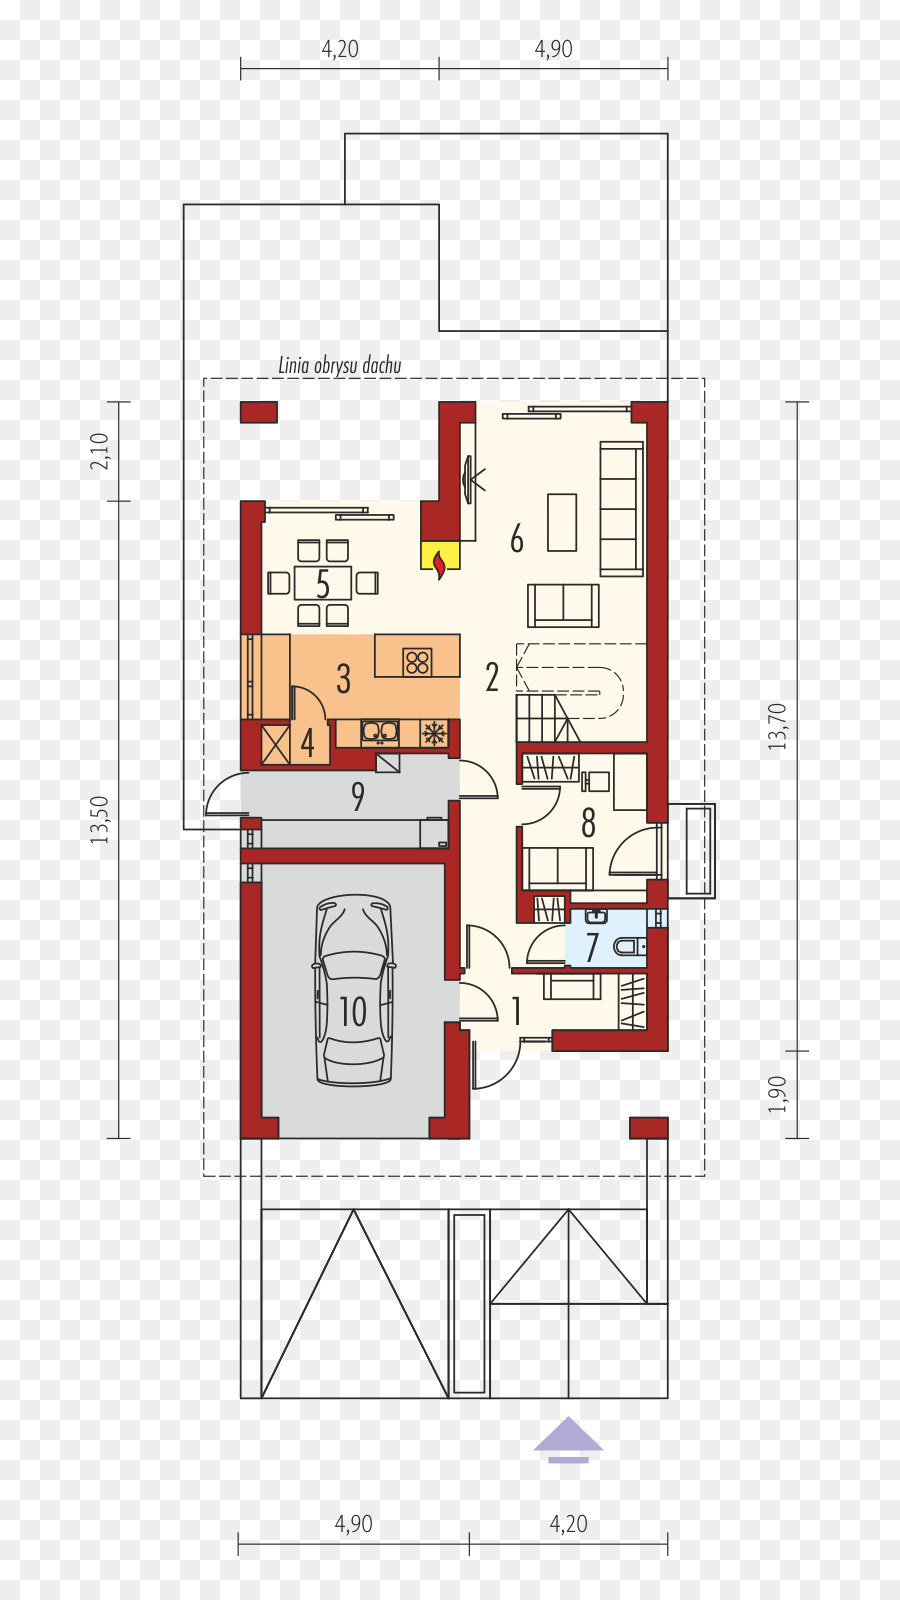 Kế hoạch sàn Nhà Archipelag mét Vuông - Nhà